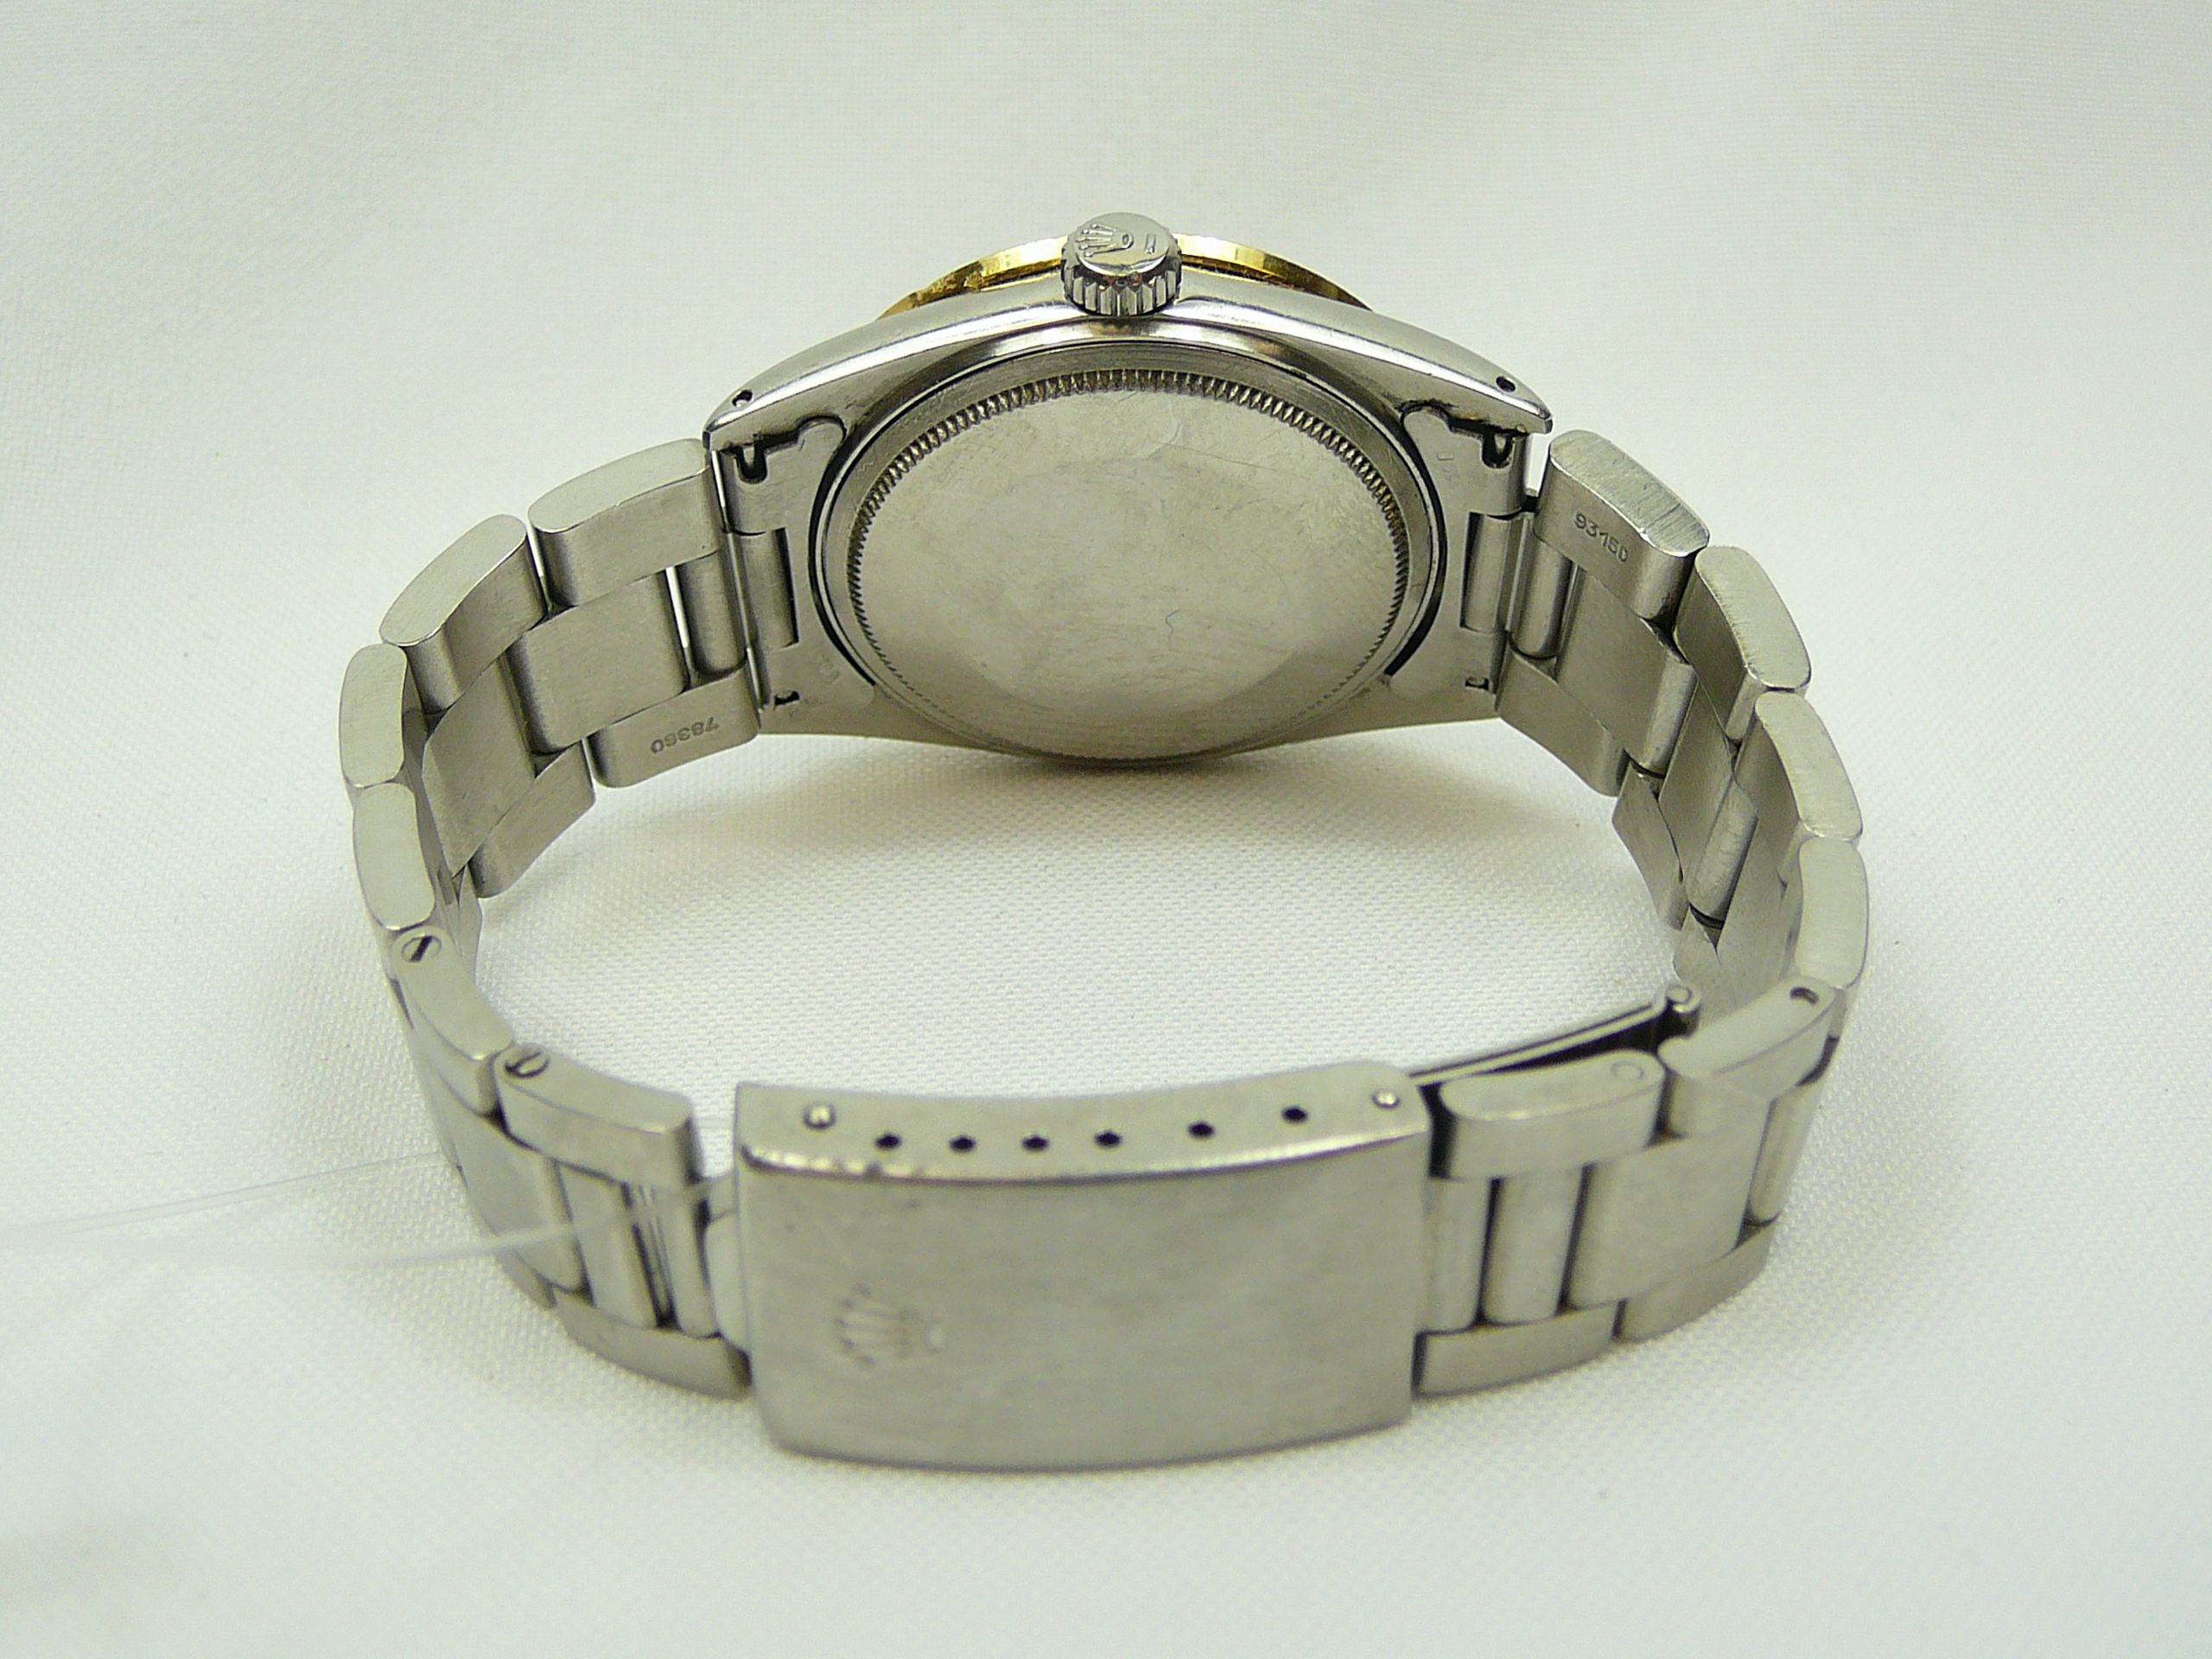 Gents Rolex Wrist Watch - Image 6 of 6